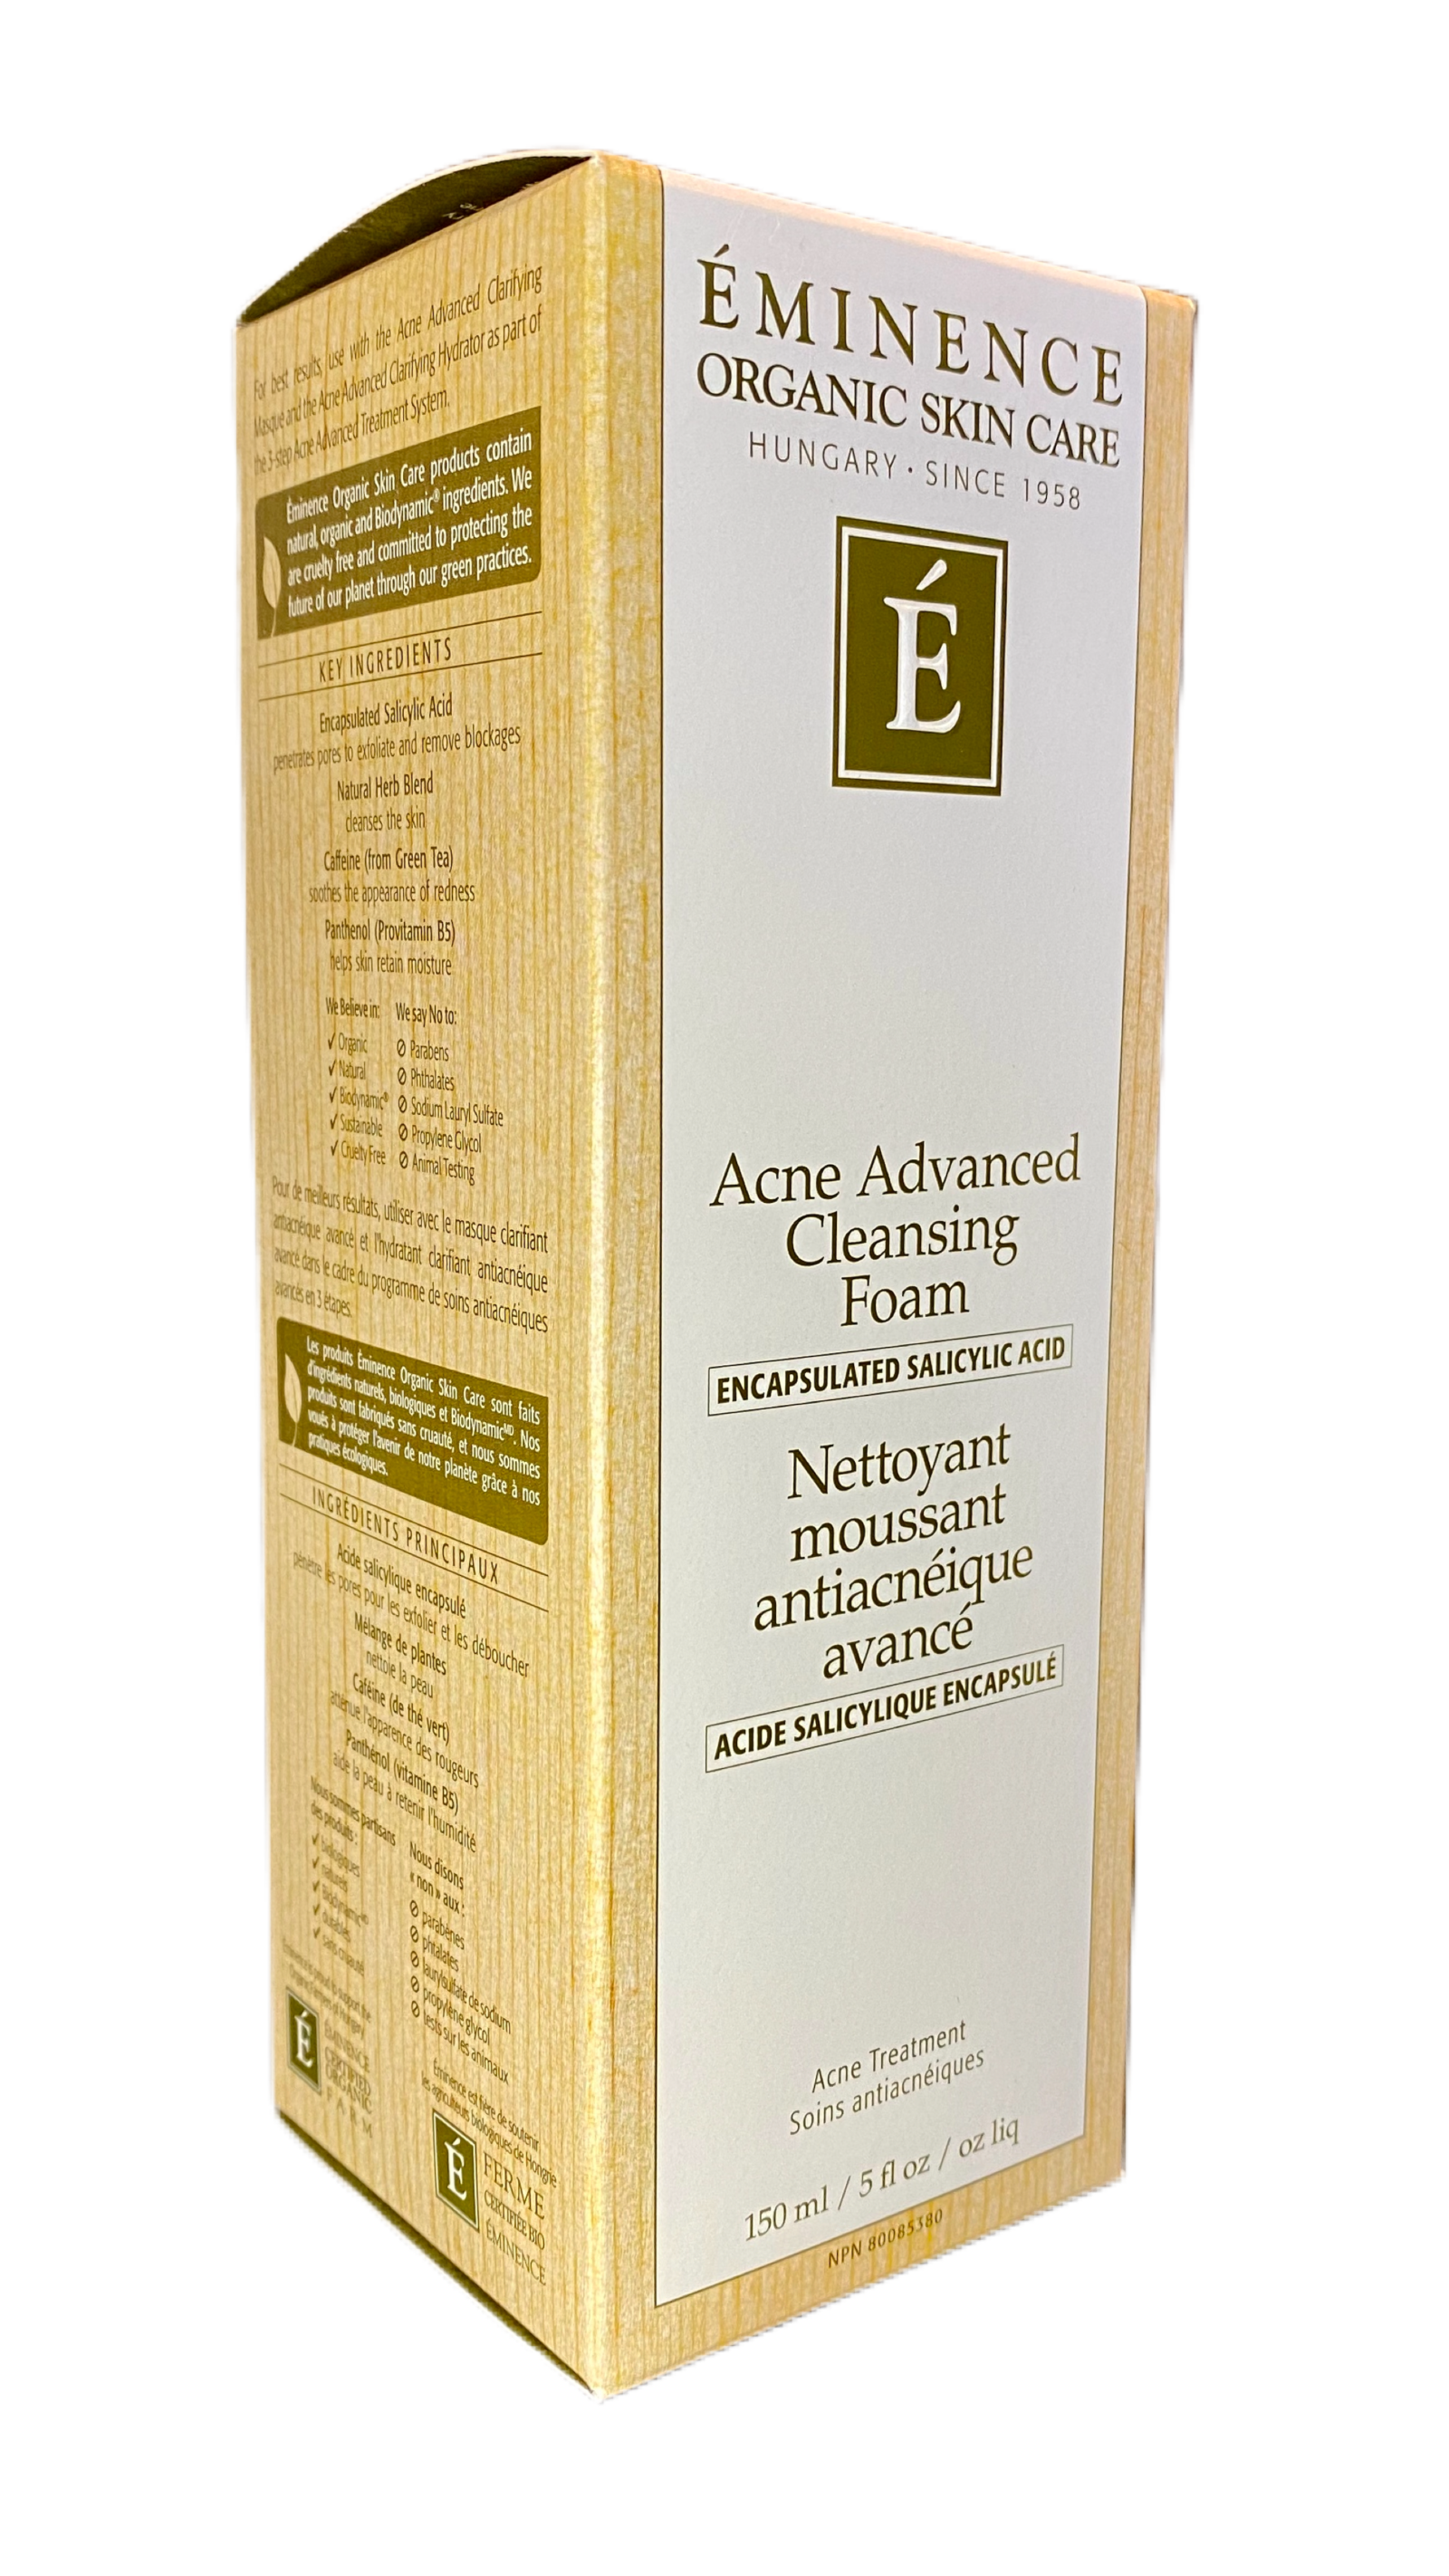 Acne Advanced Cleansing Foam